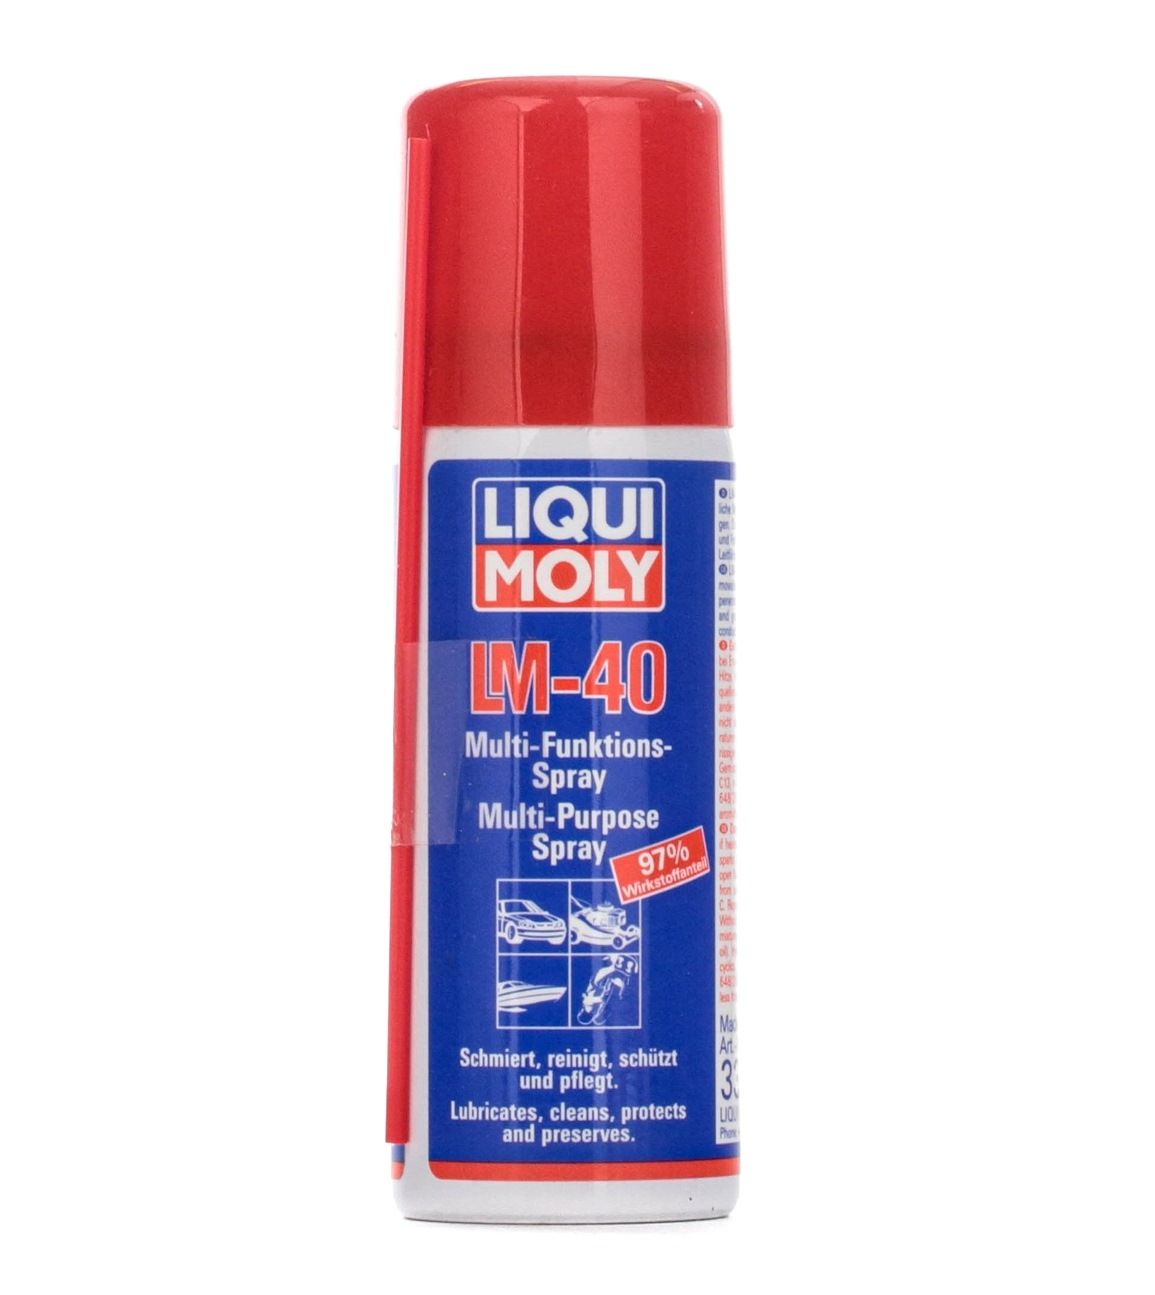 LIQUI MOLY Penetrating oil 3394